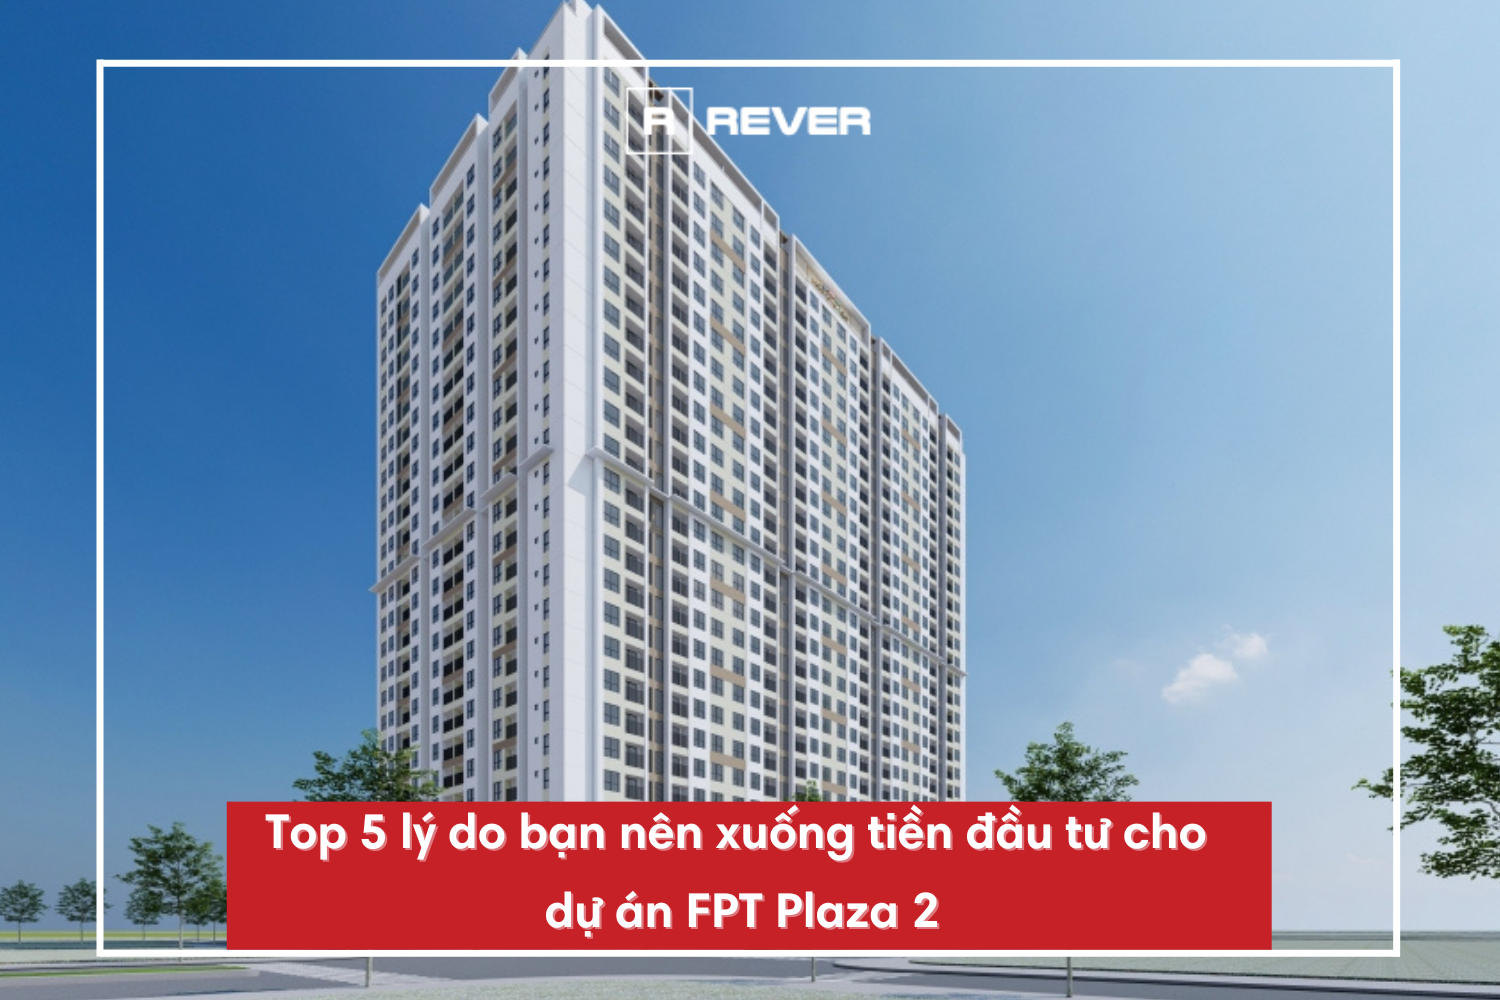 Top 5 lý do bạn nên xuống tiền đầu tư cho dự án FPT Plaza 2